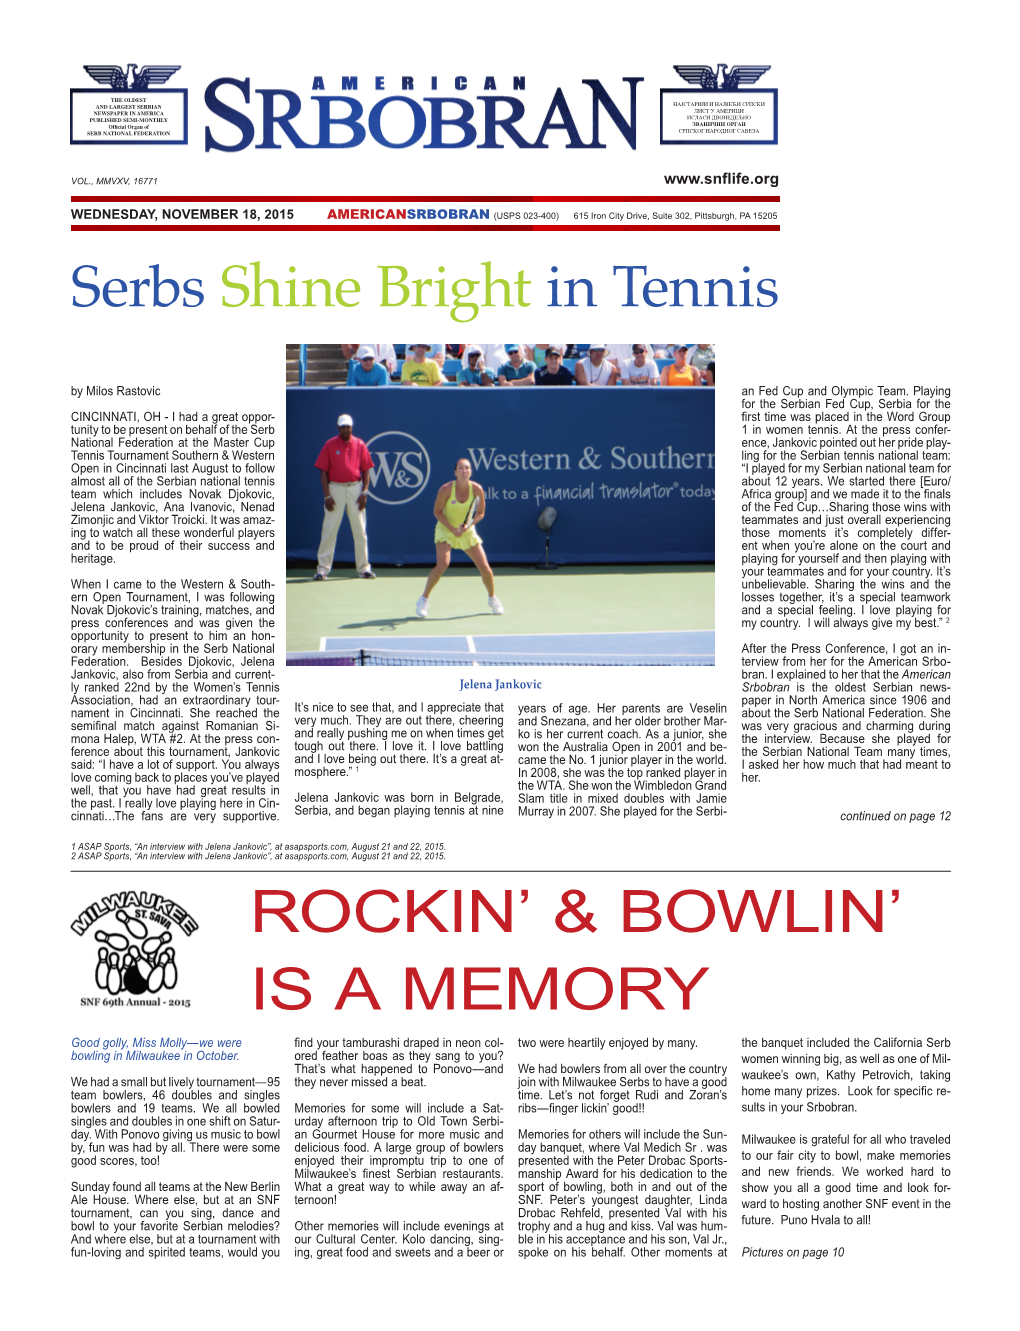 ROCKIN' & BOWLIN' IS a MEMORY Serbs Shine Bright in Tennis